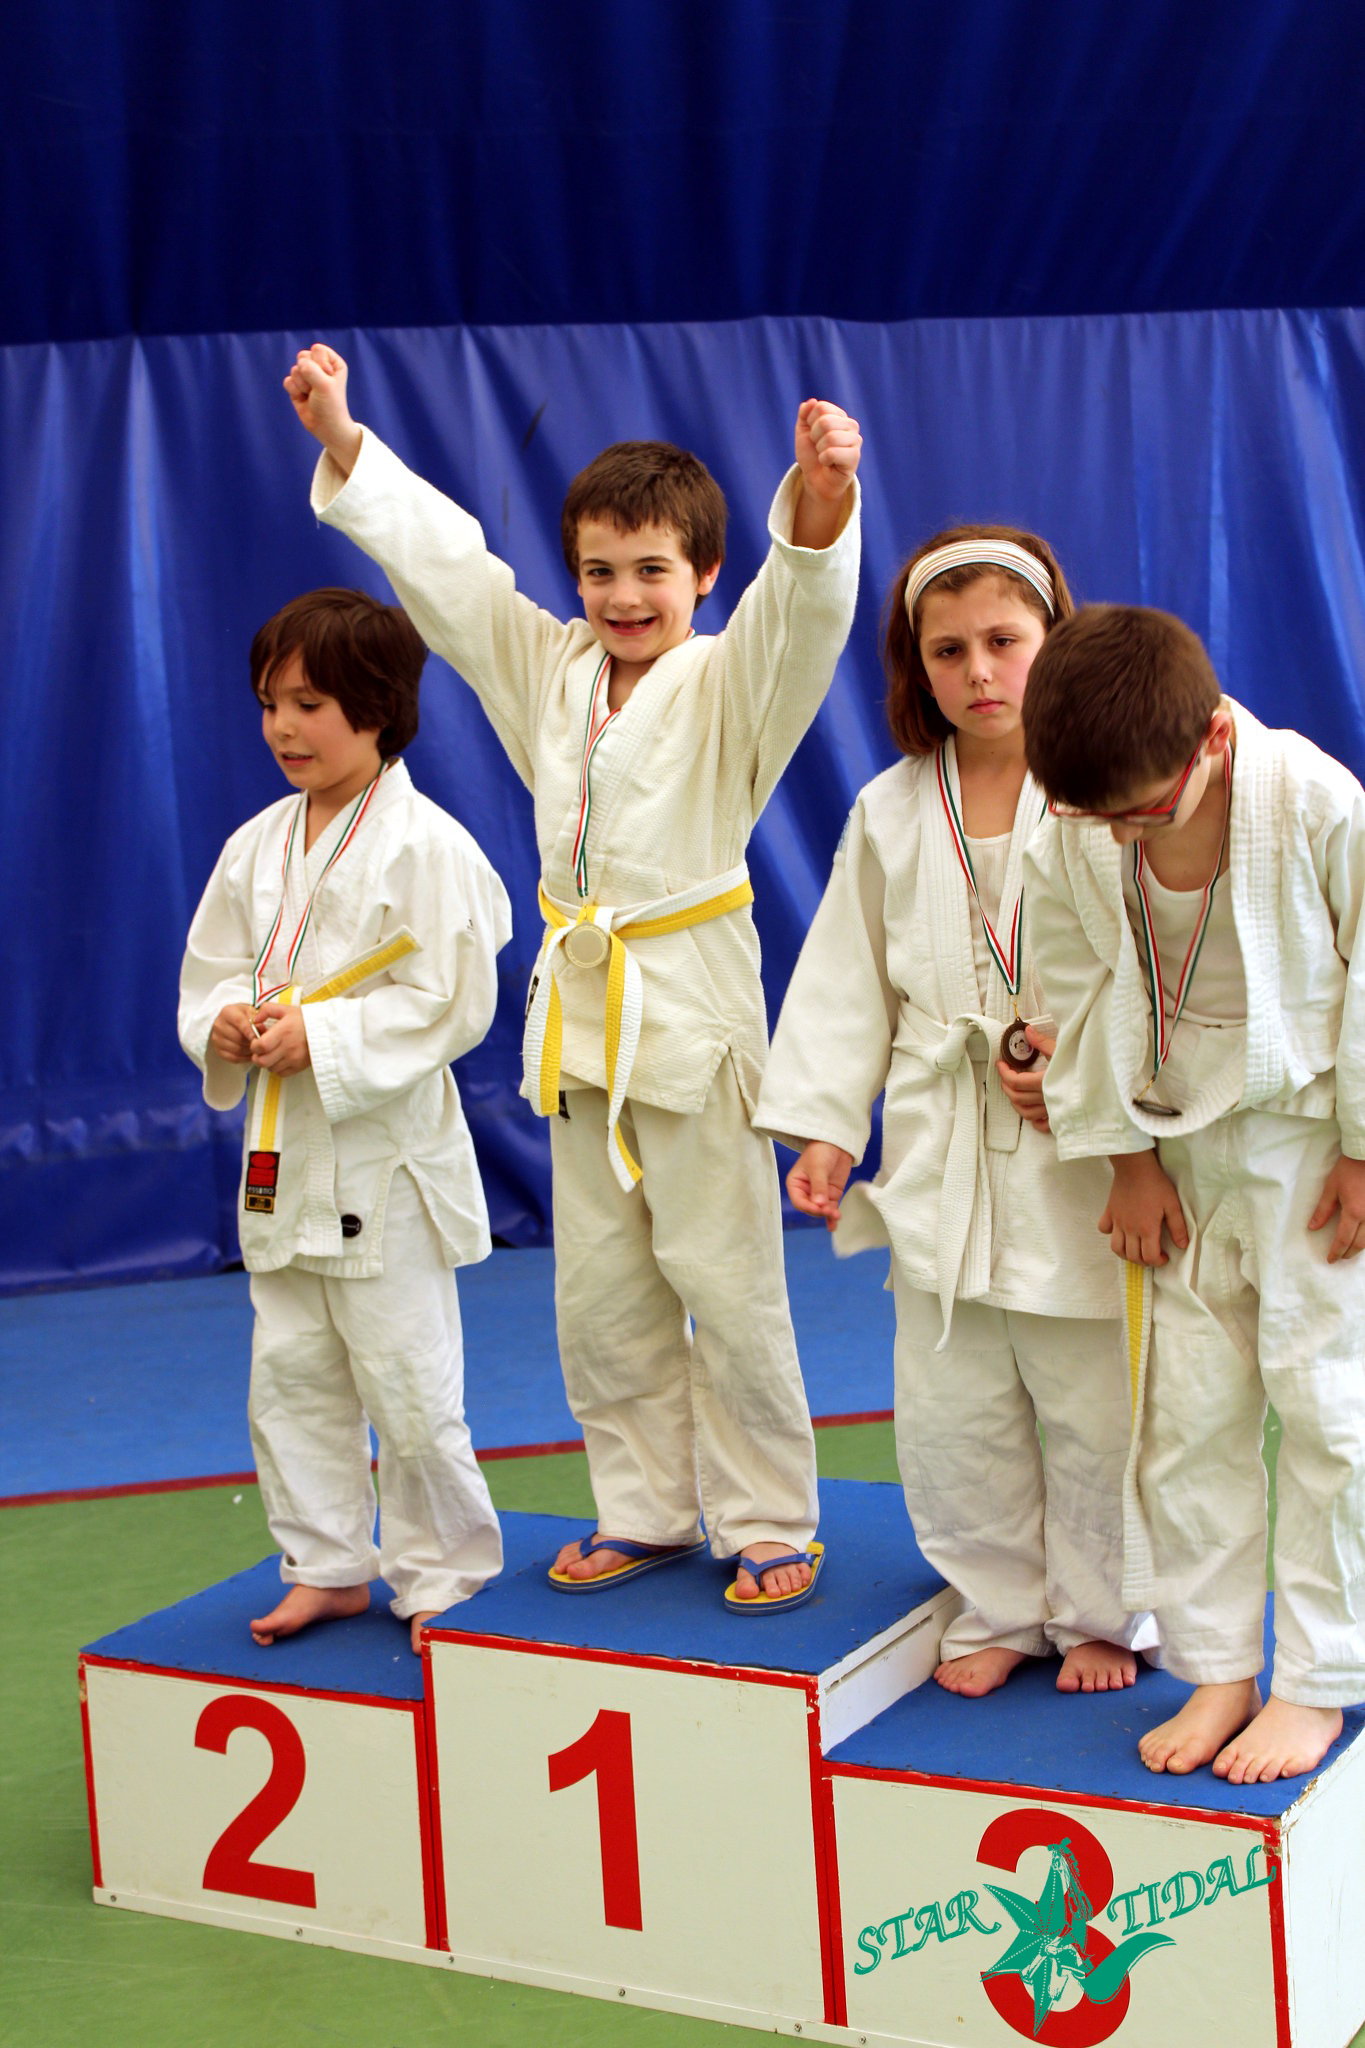 Filippo primo alla sua prima gara di Judo